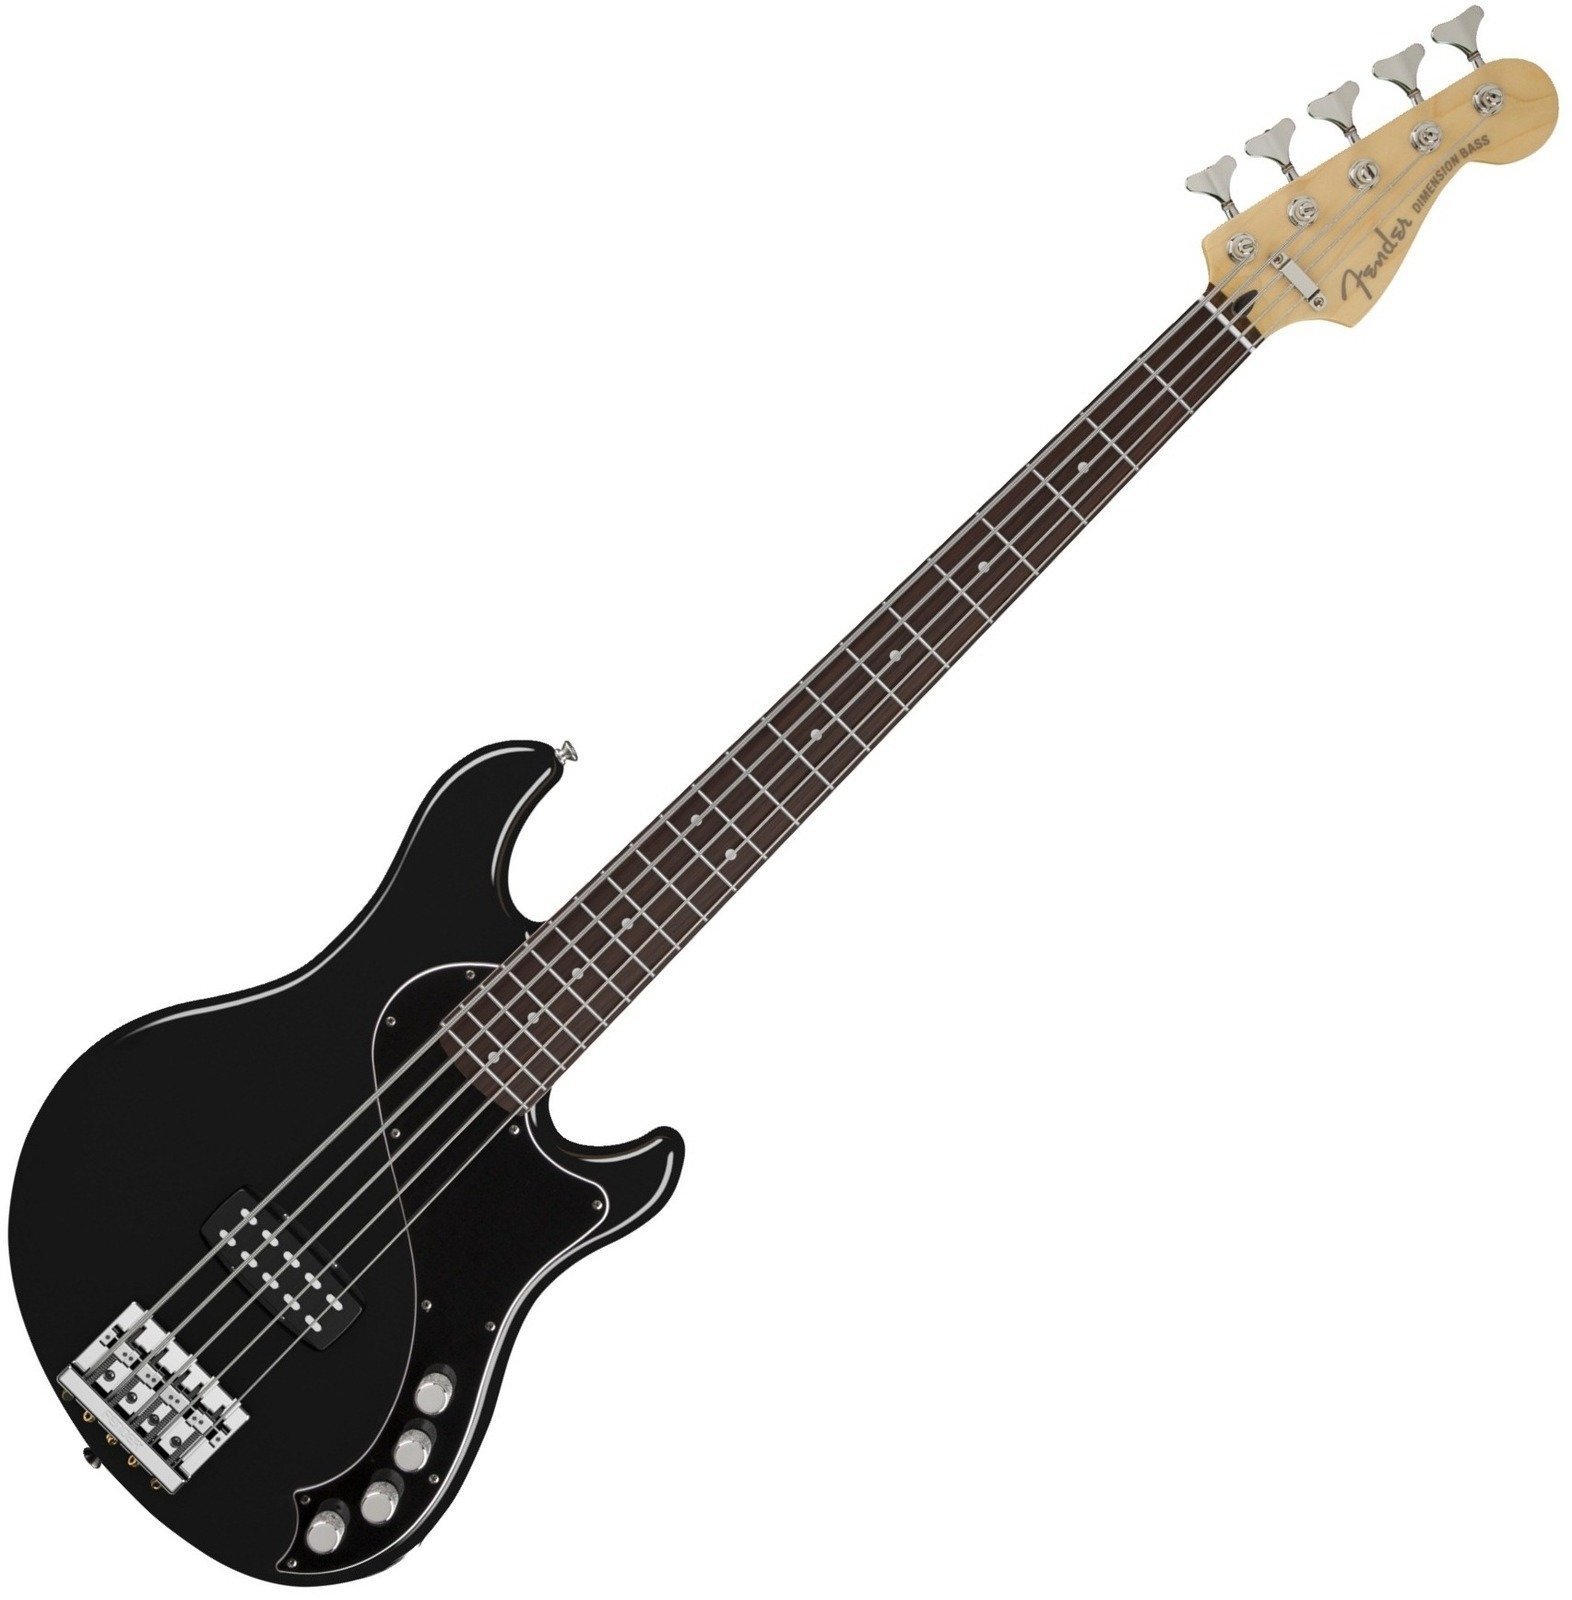 Baixo de 5 cordas Fender Deluxe Dimension Bass V 5 string Black